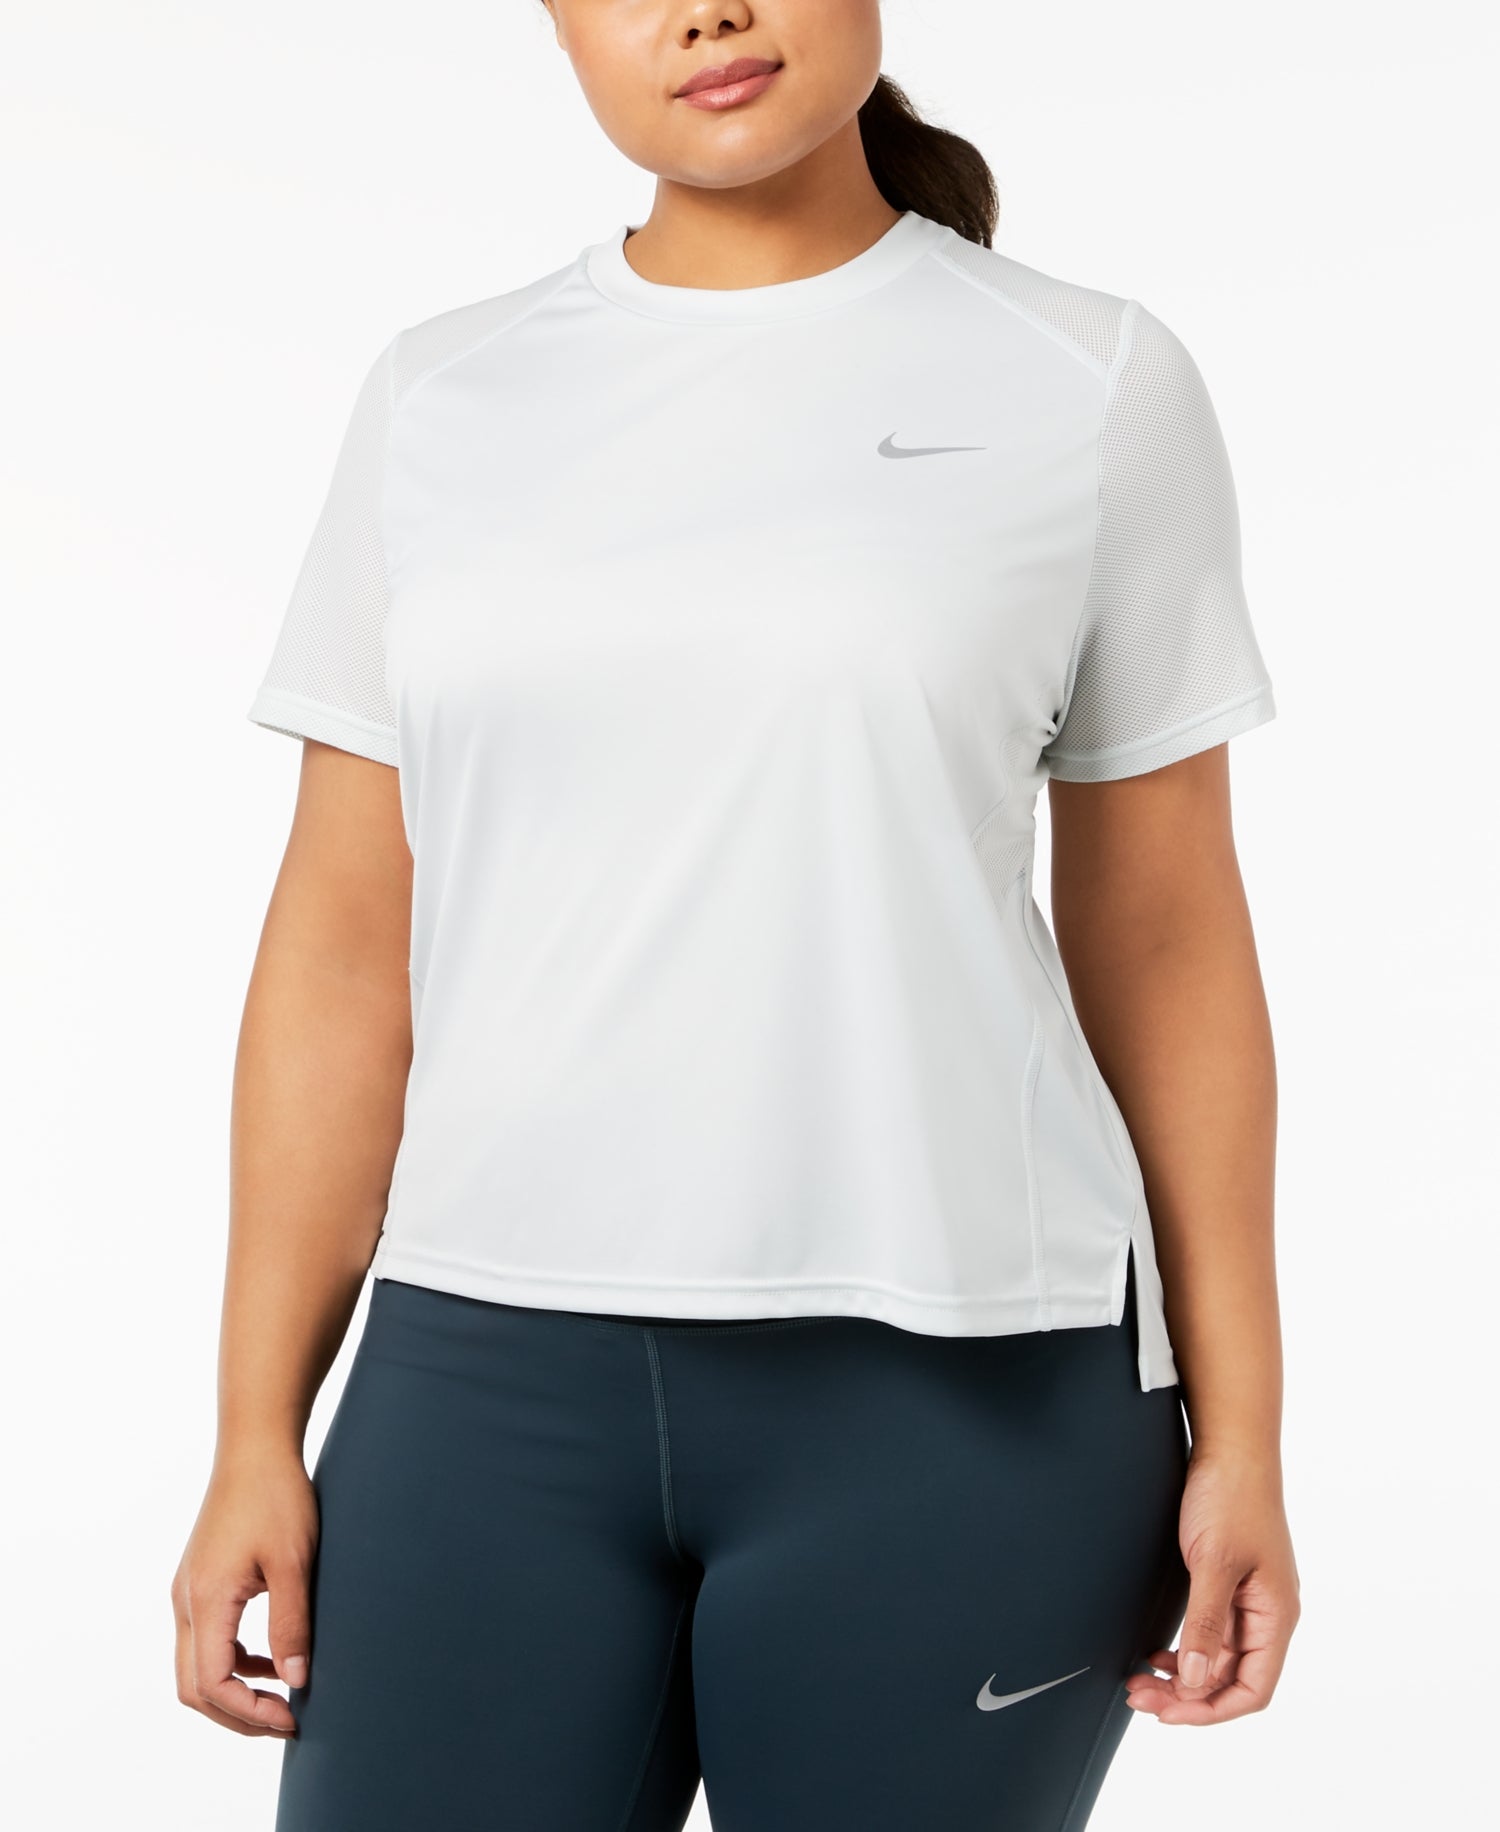 Nike Womens Plus Size Miler Running Top